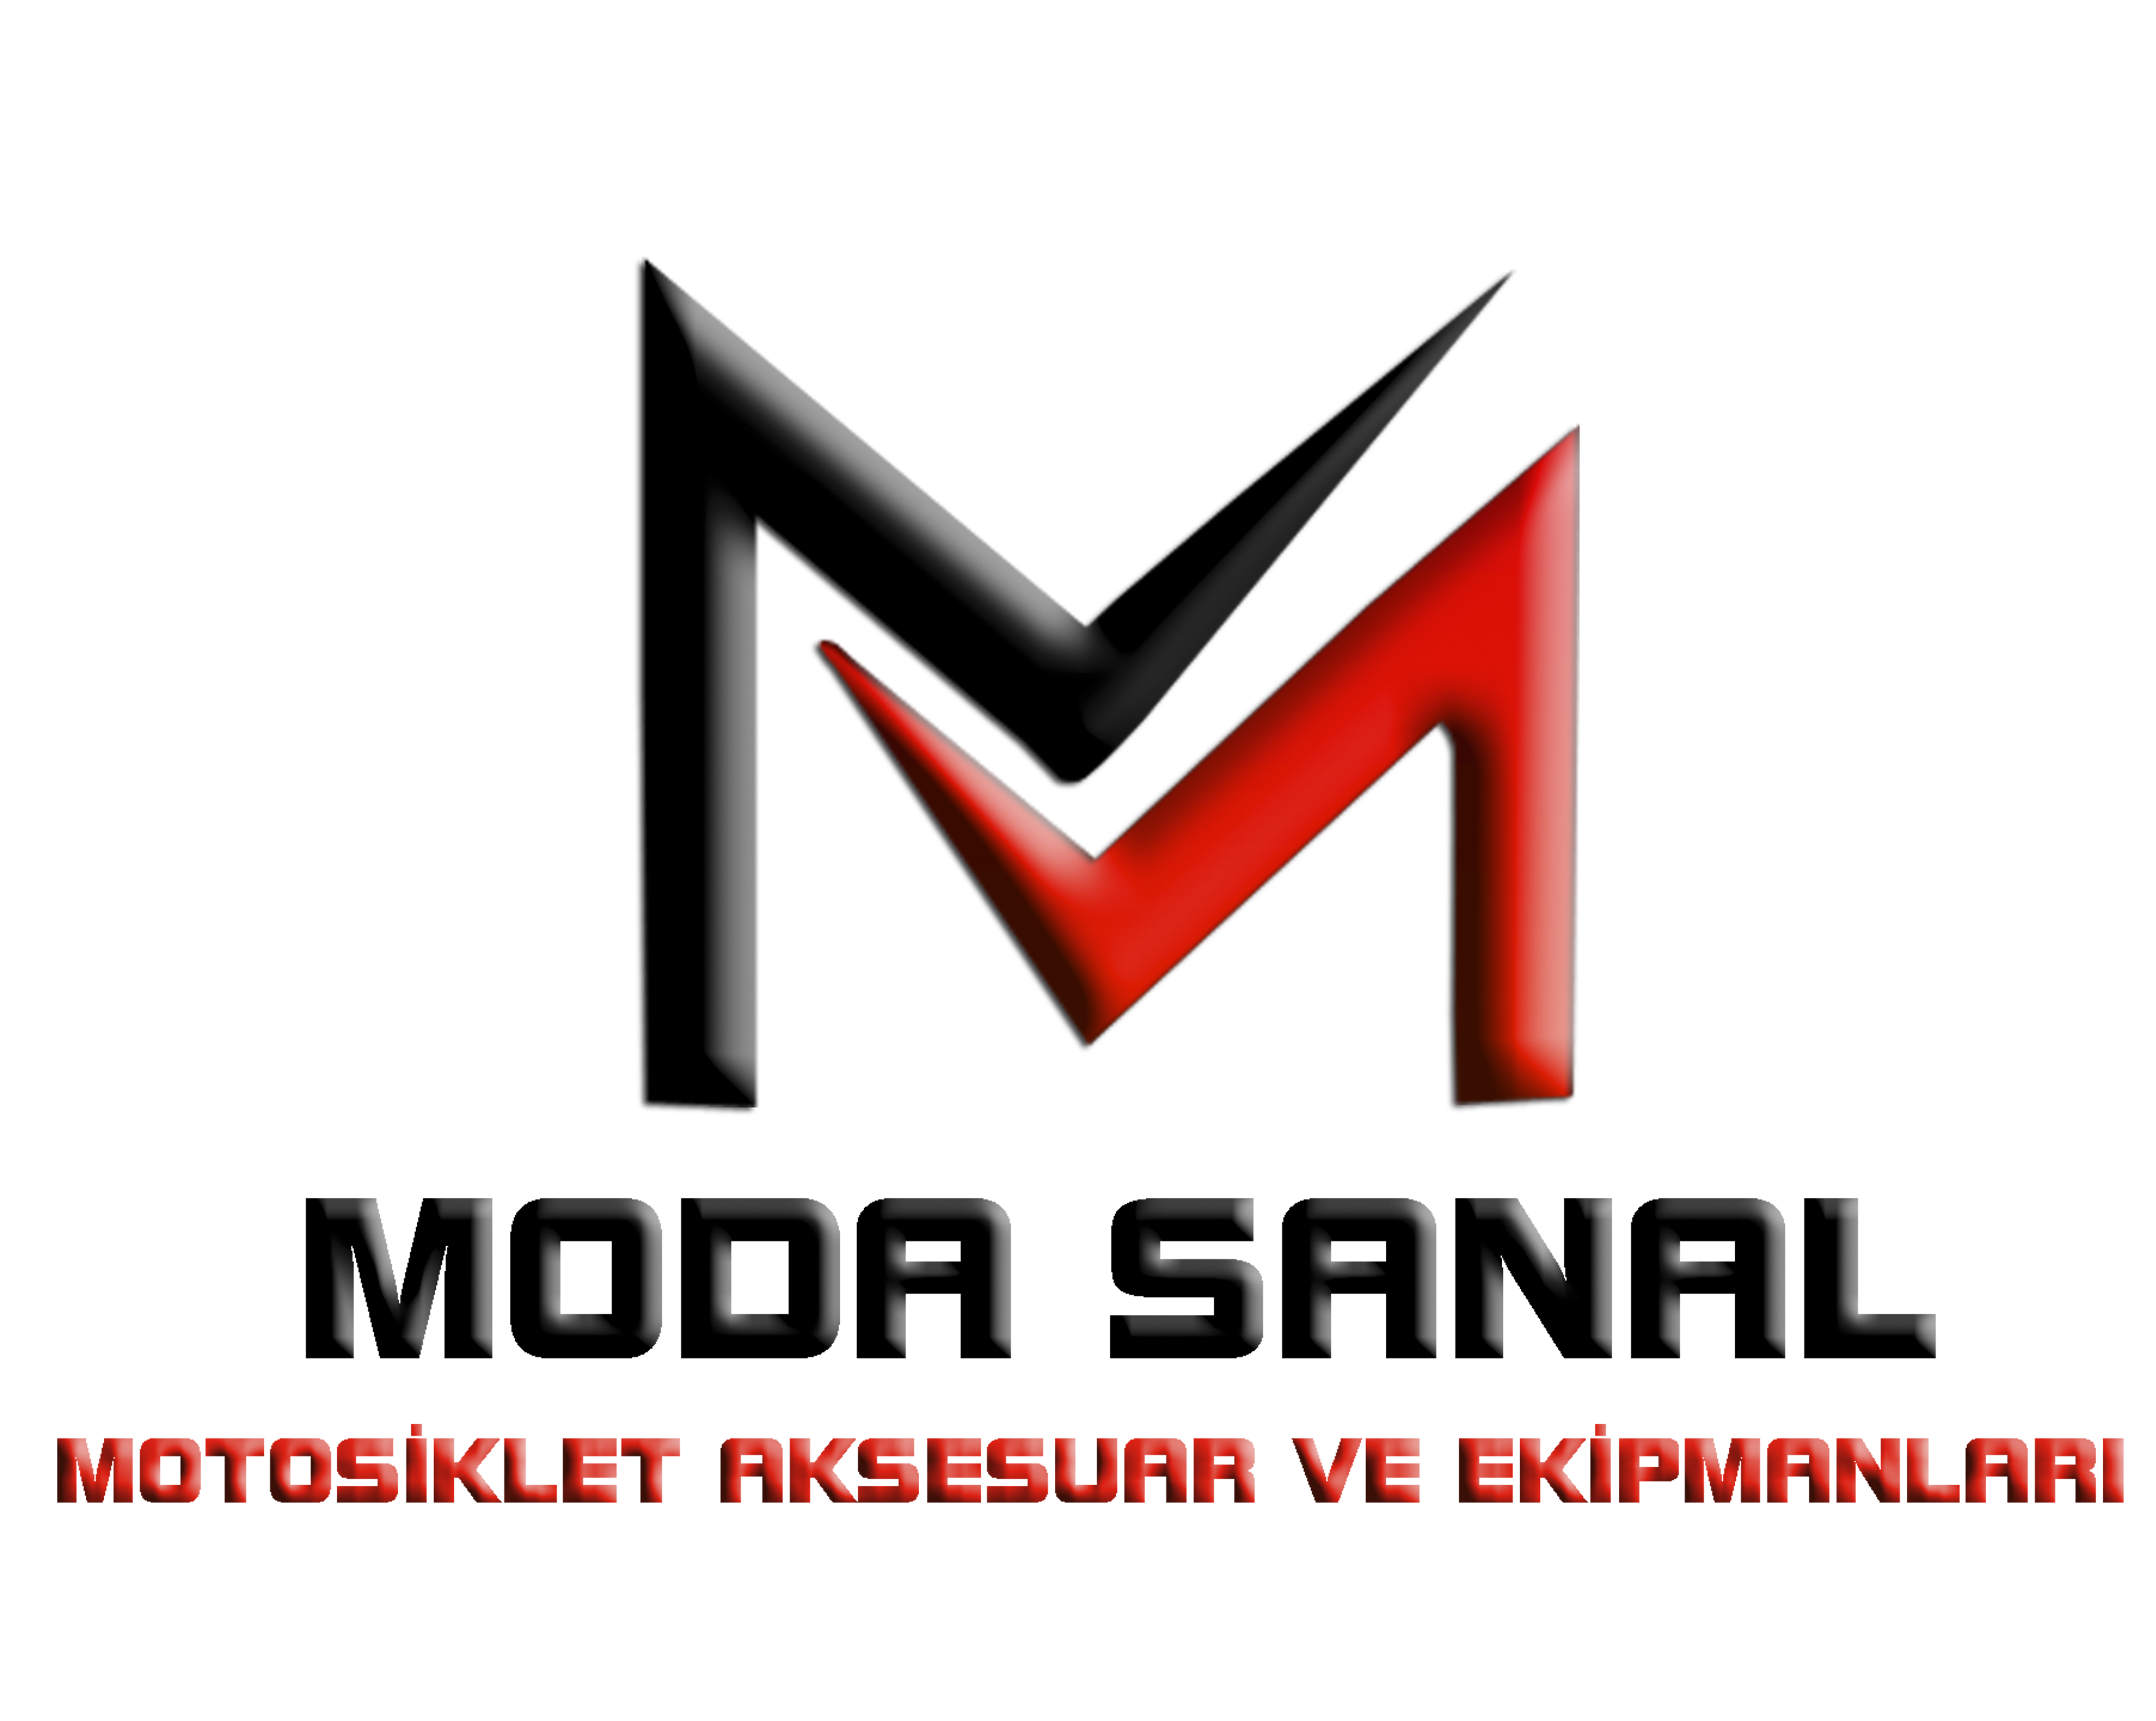 MODASANAL